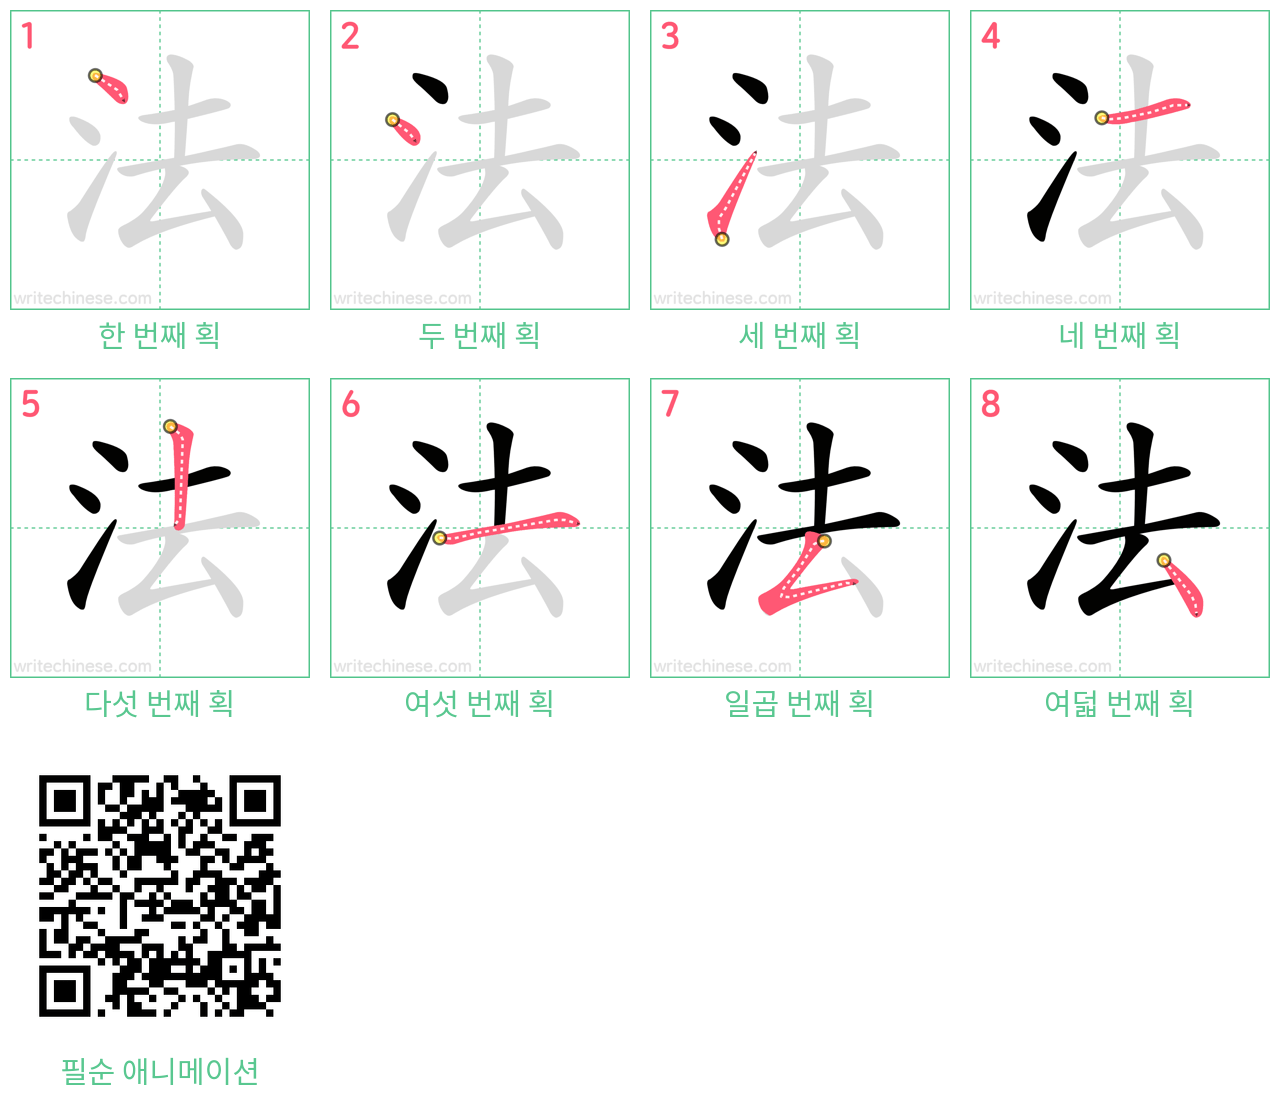 法 step-by-step stroke order diagrams